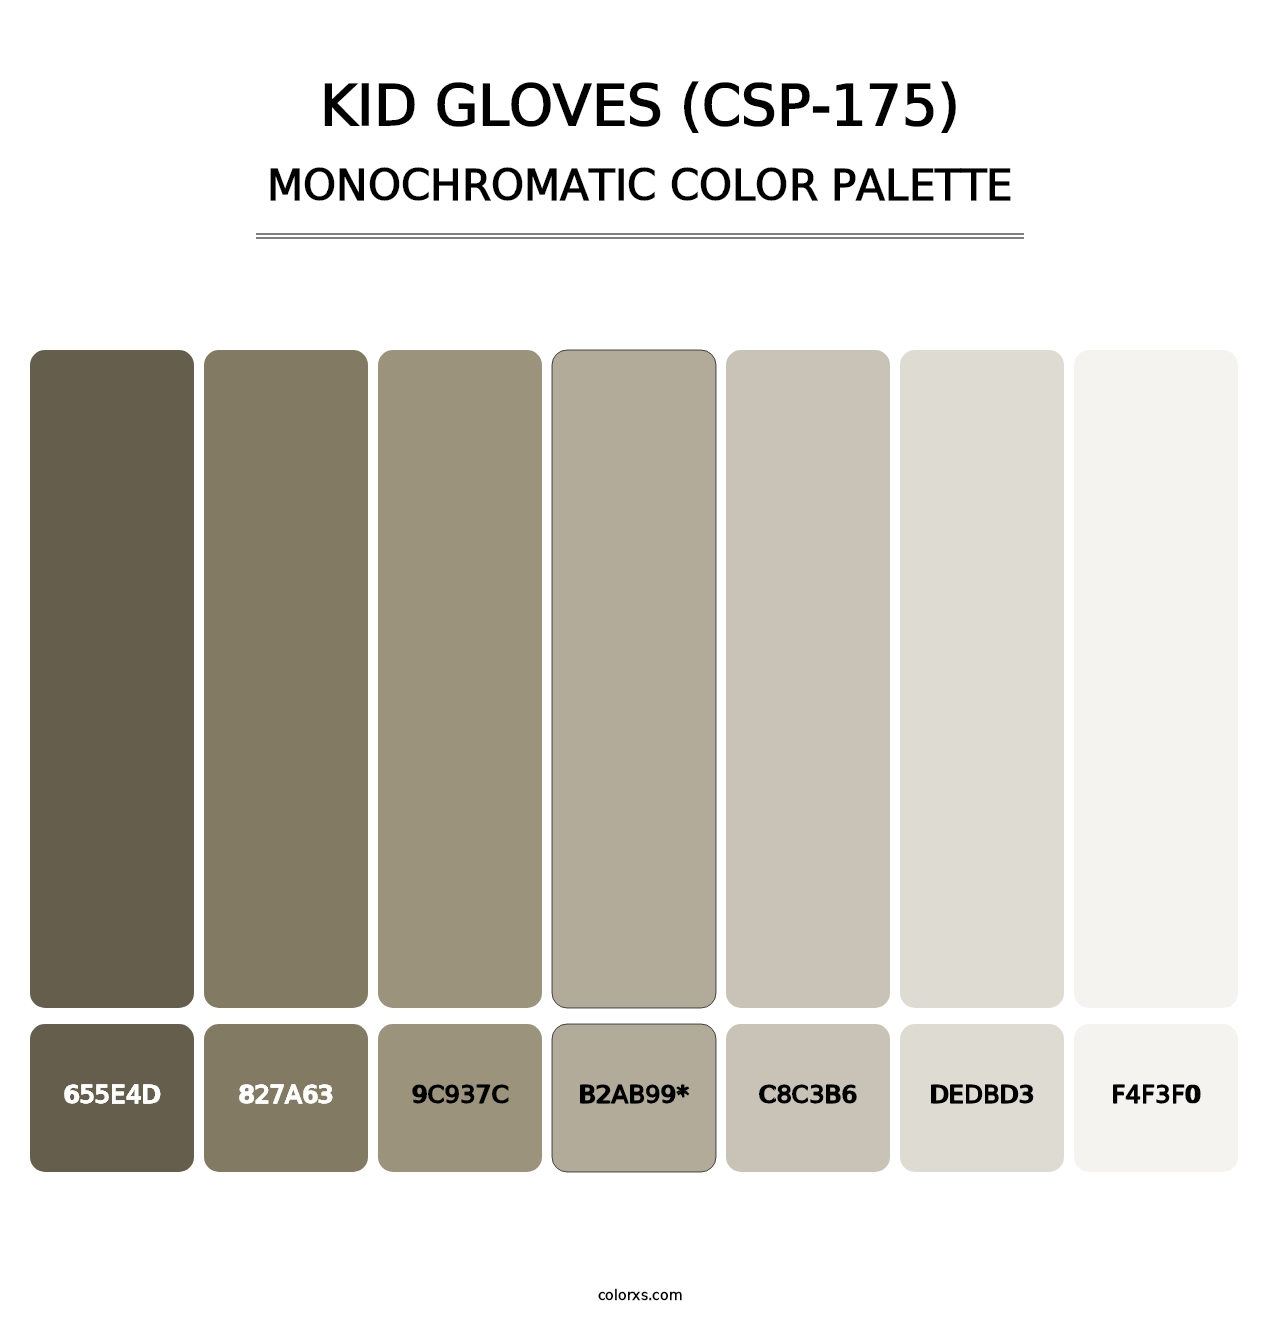 Kid Gloves (CSP-175) - Monochromatic Color Palette